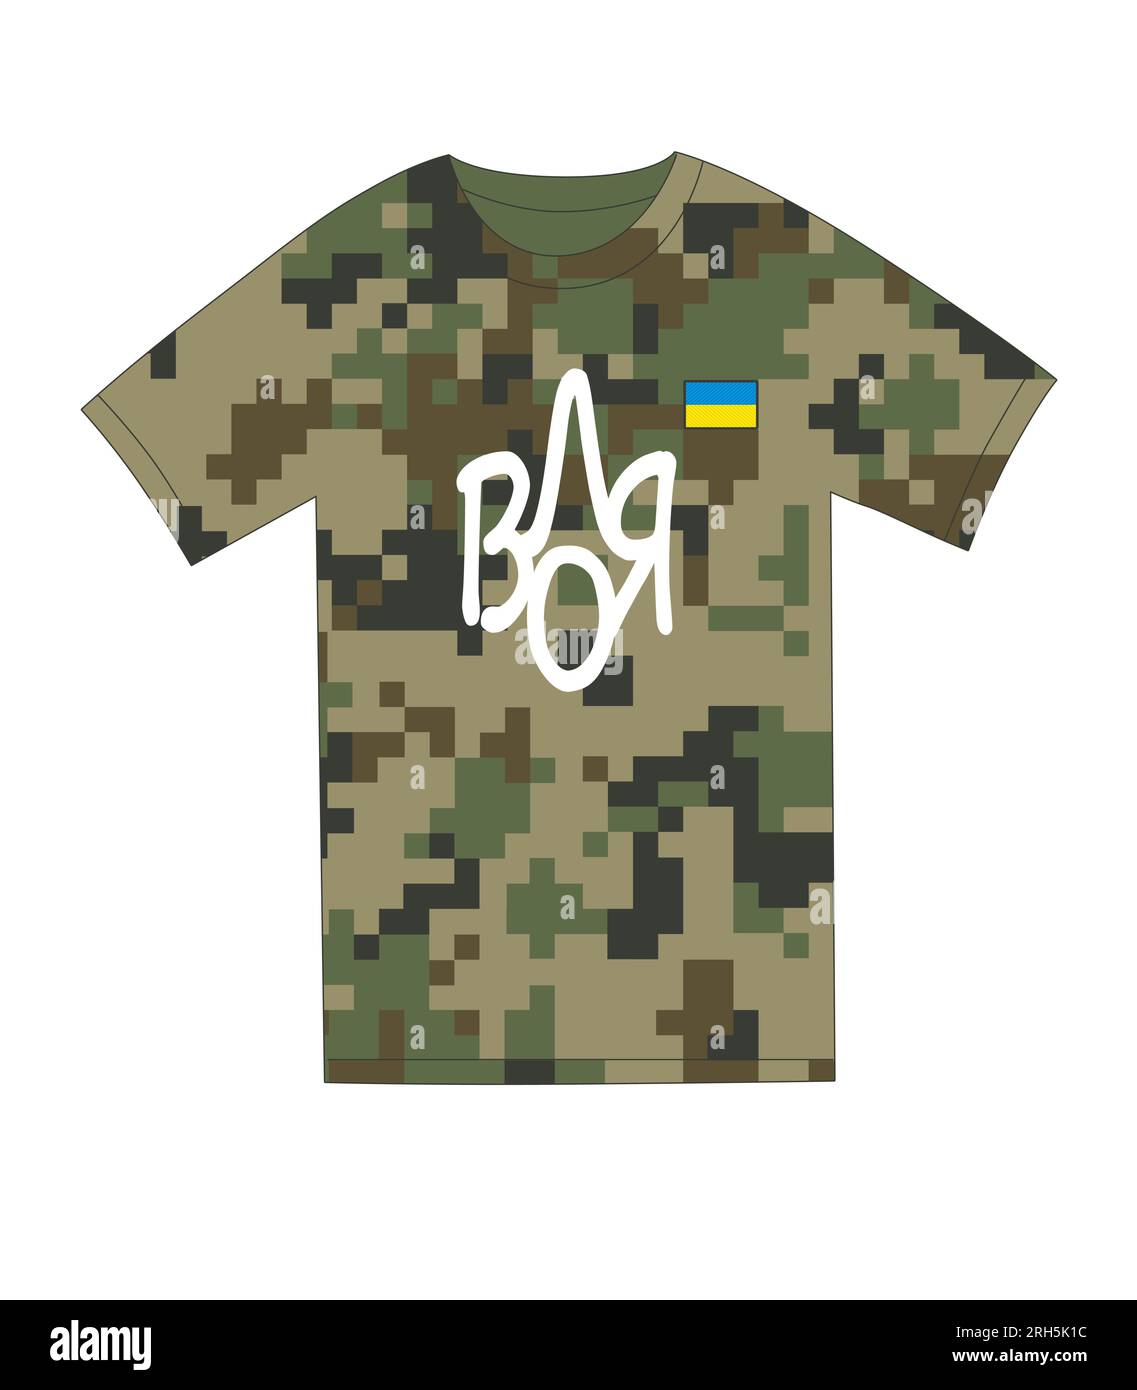 Liberté, imprimé patriotique ukrainien sur t-shirt pixel. Traduction de l'ukrainien - liberté. Concept manuscrit vectoriel en forme de trident Illustration de Vecteur